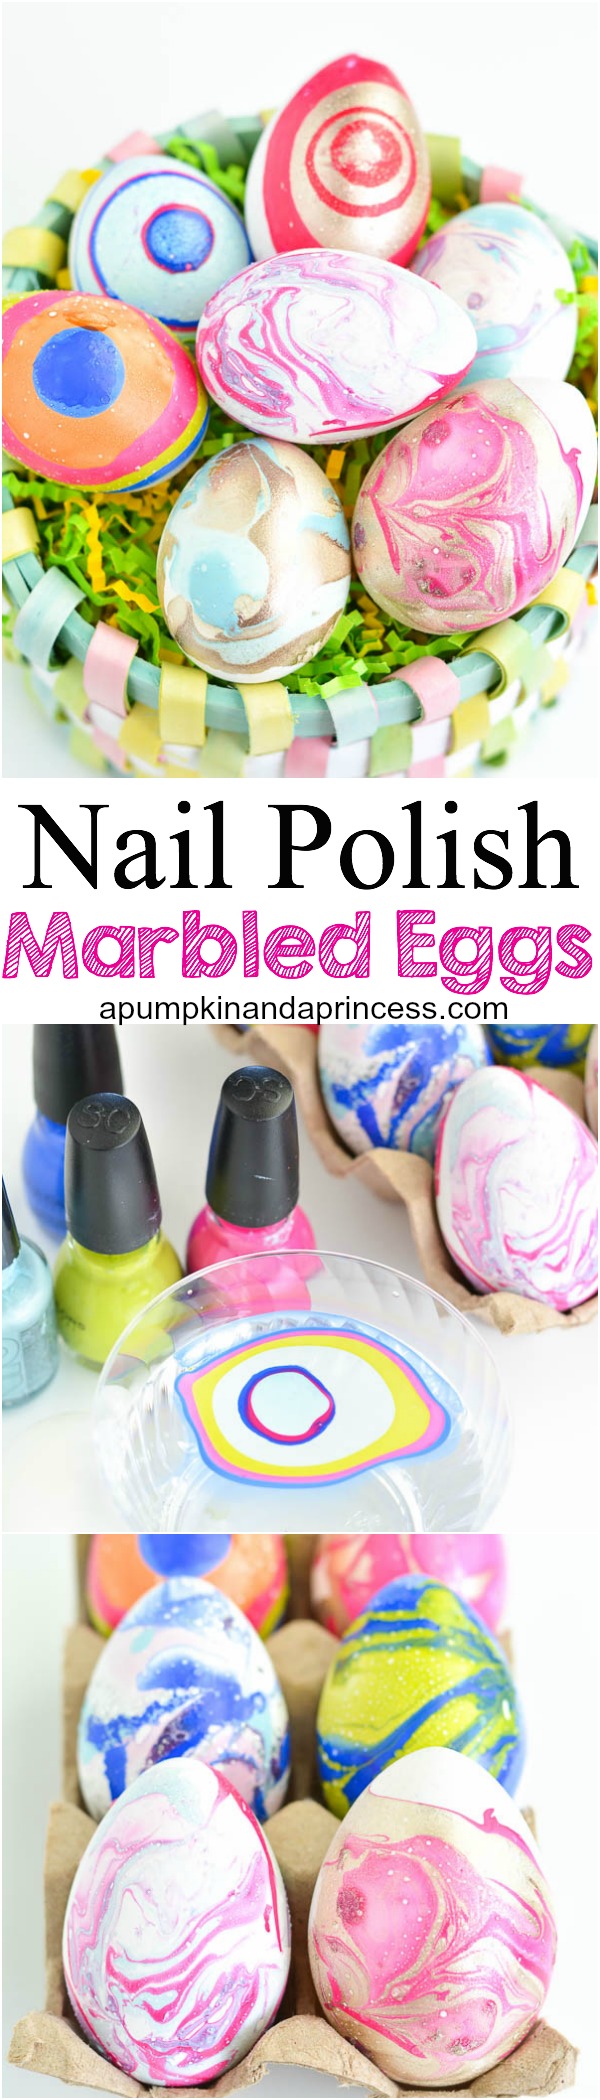 DIY Nail Polish Marbled Eggs